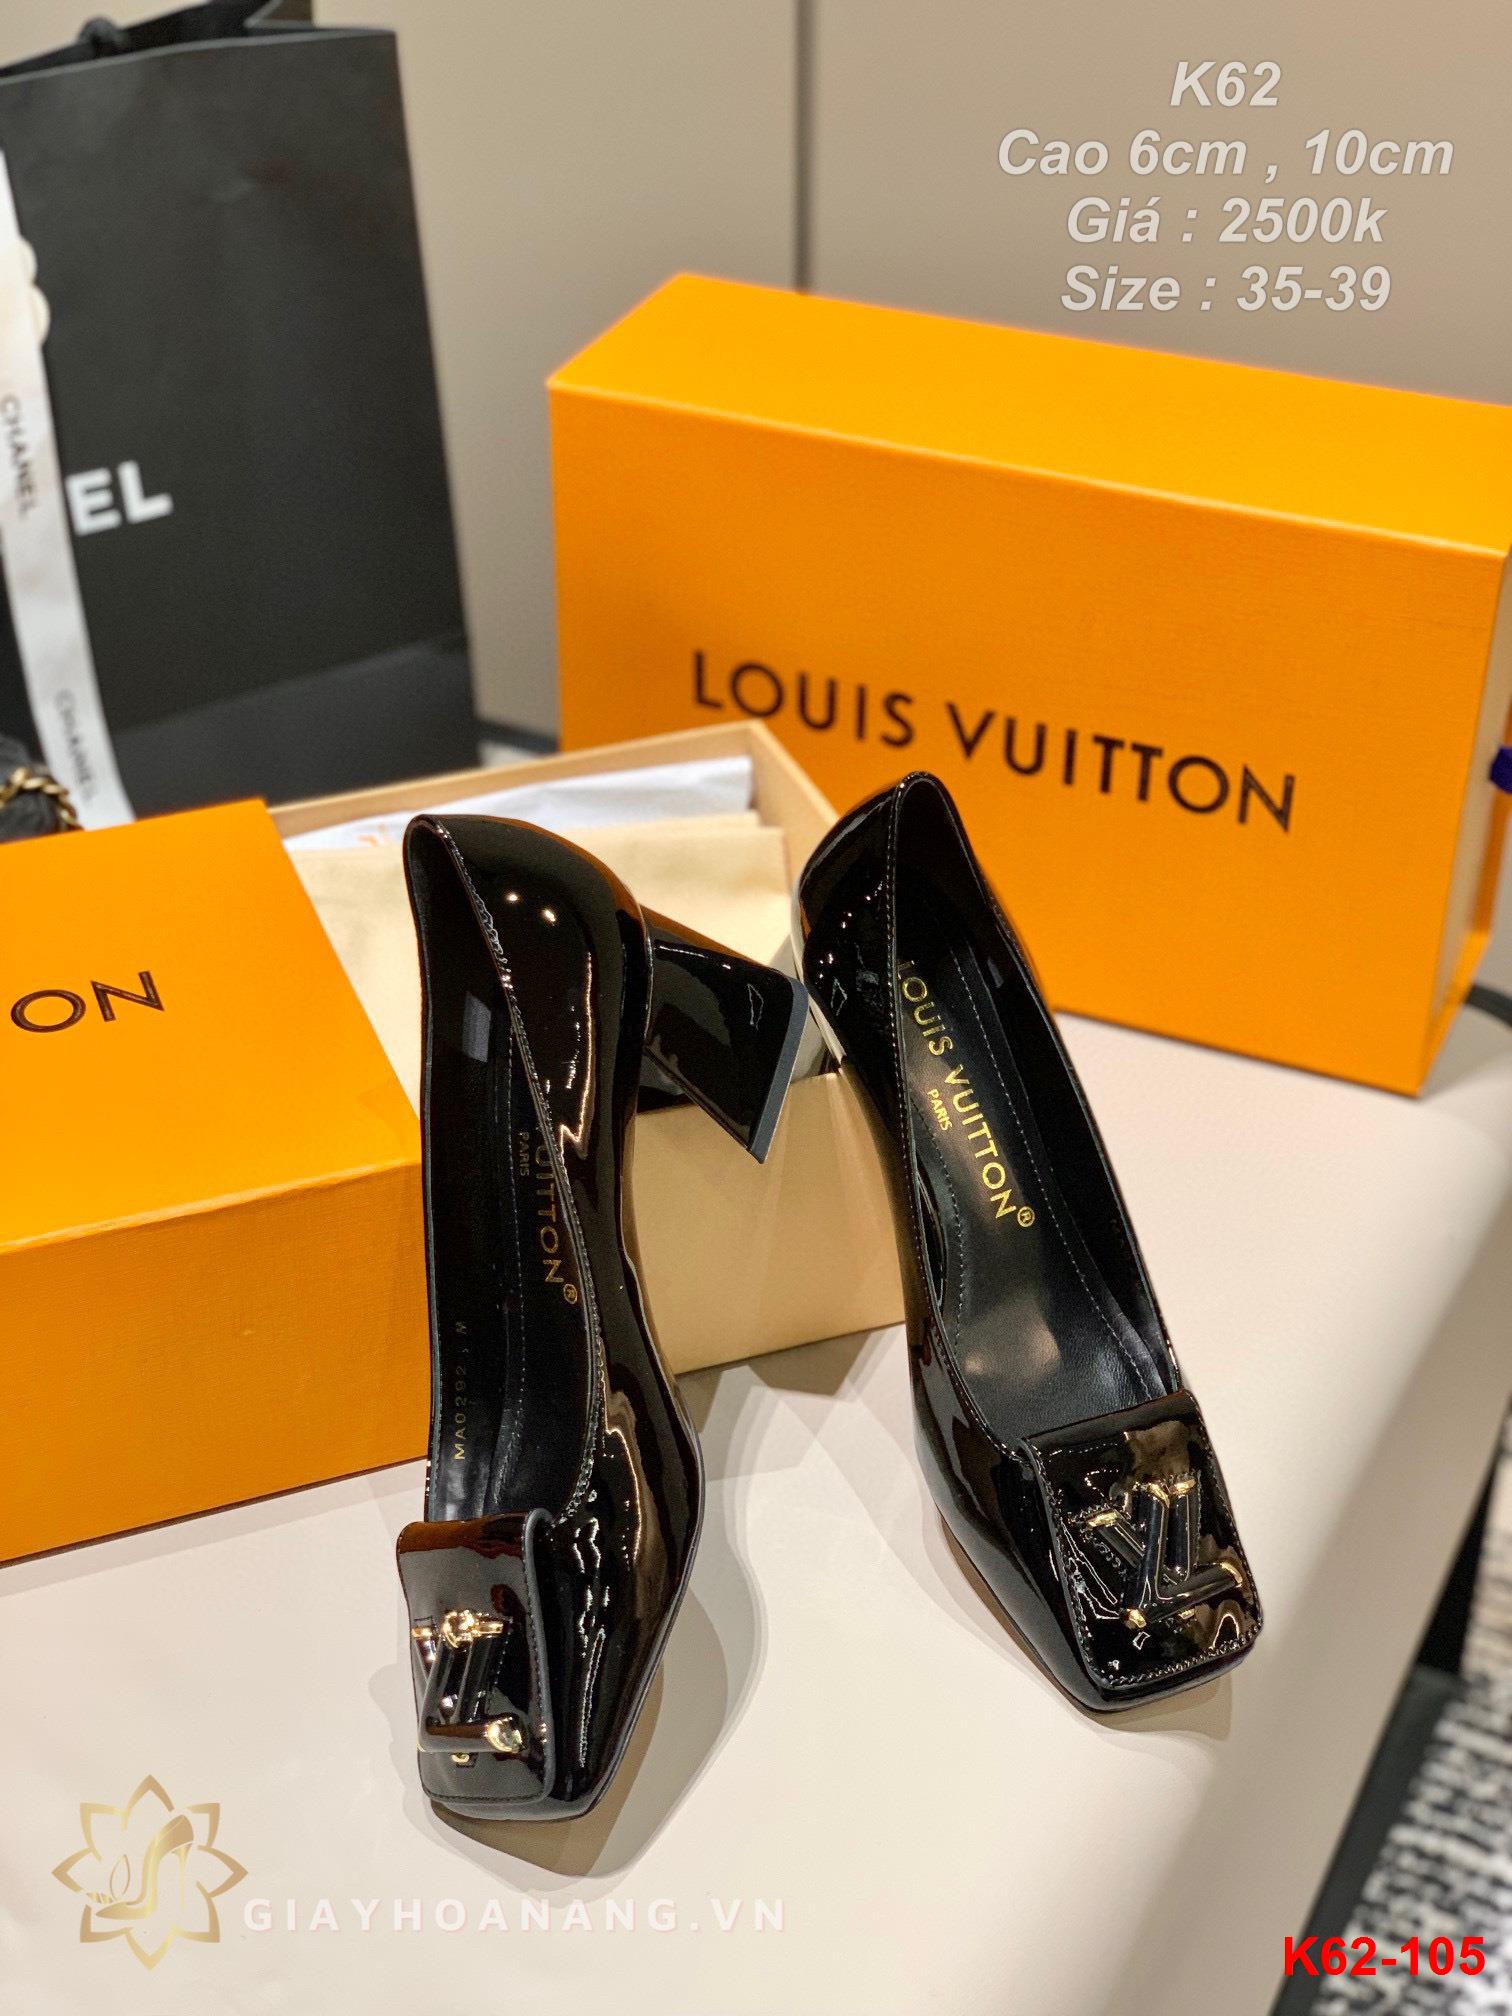 K62-105 Louis Vuitton giày cao 6cm , 10cm siêu cấp